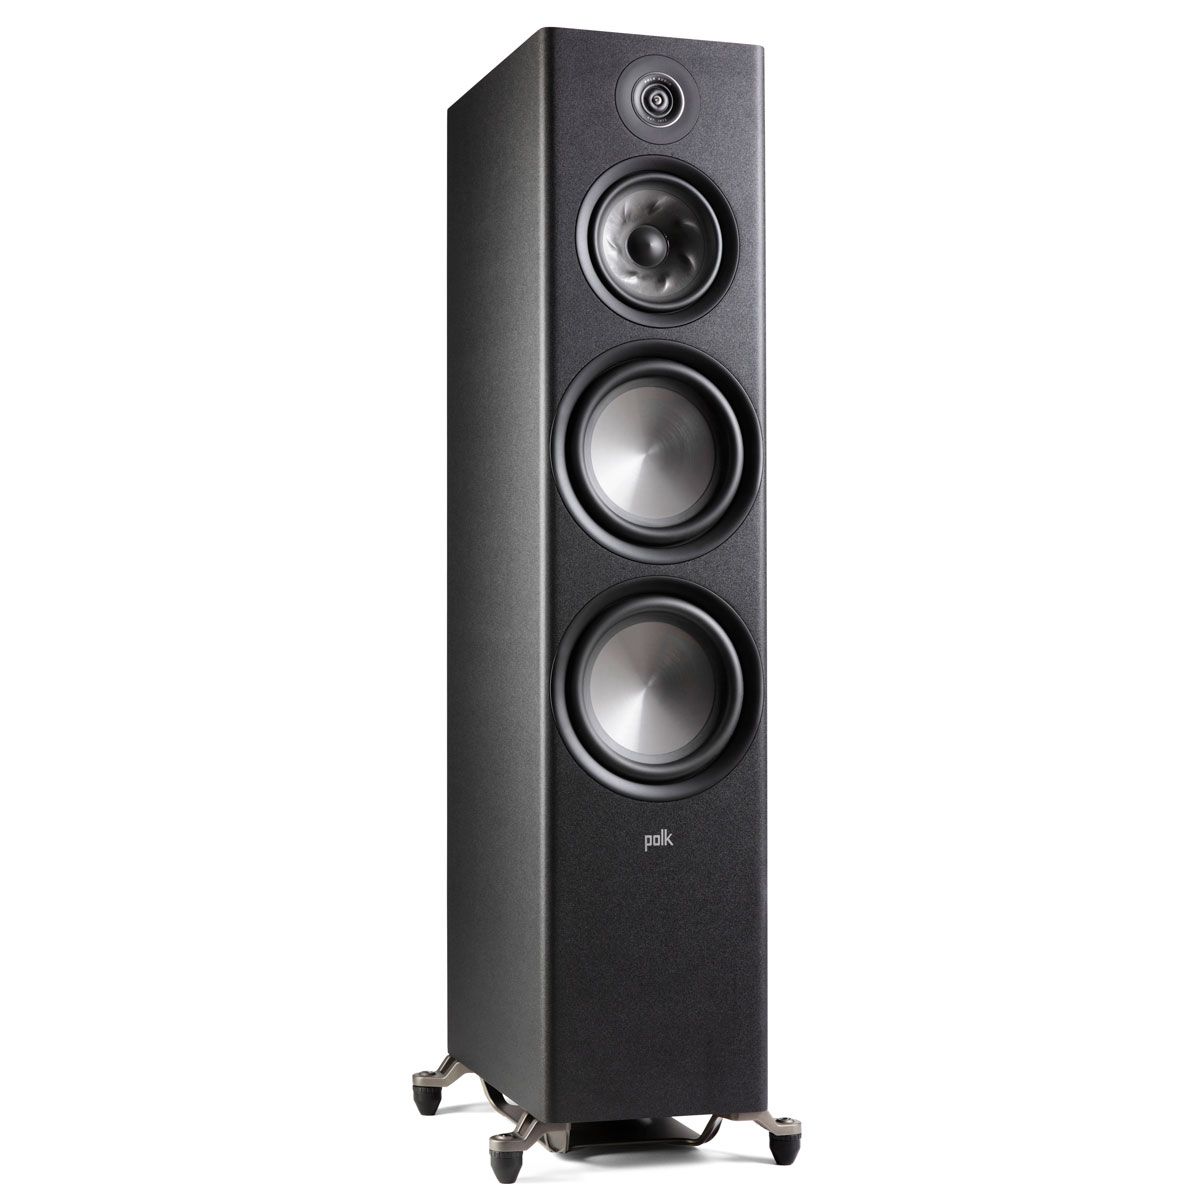 Polk Audio Reserve R700 Floorstanding Speaker, Black, front right angle